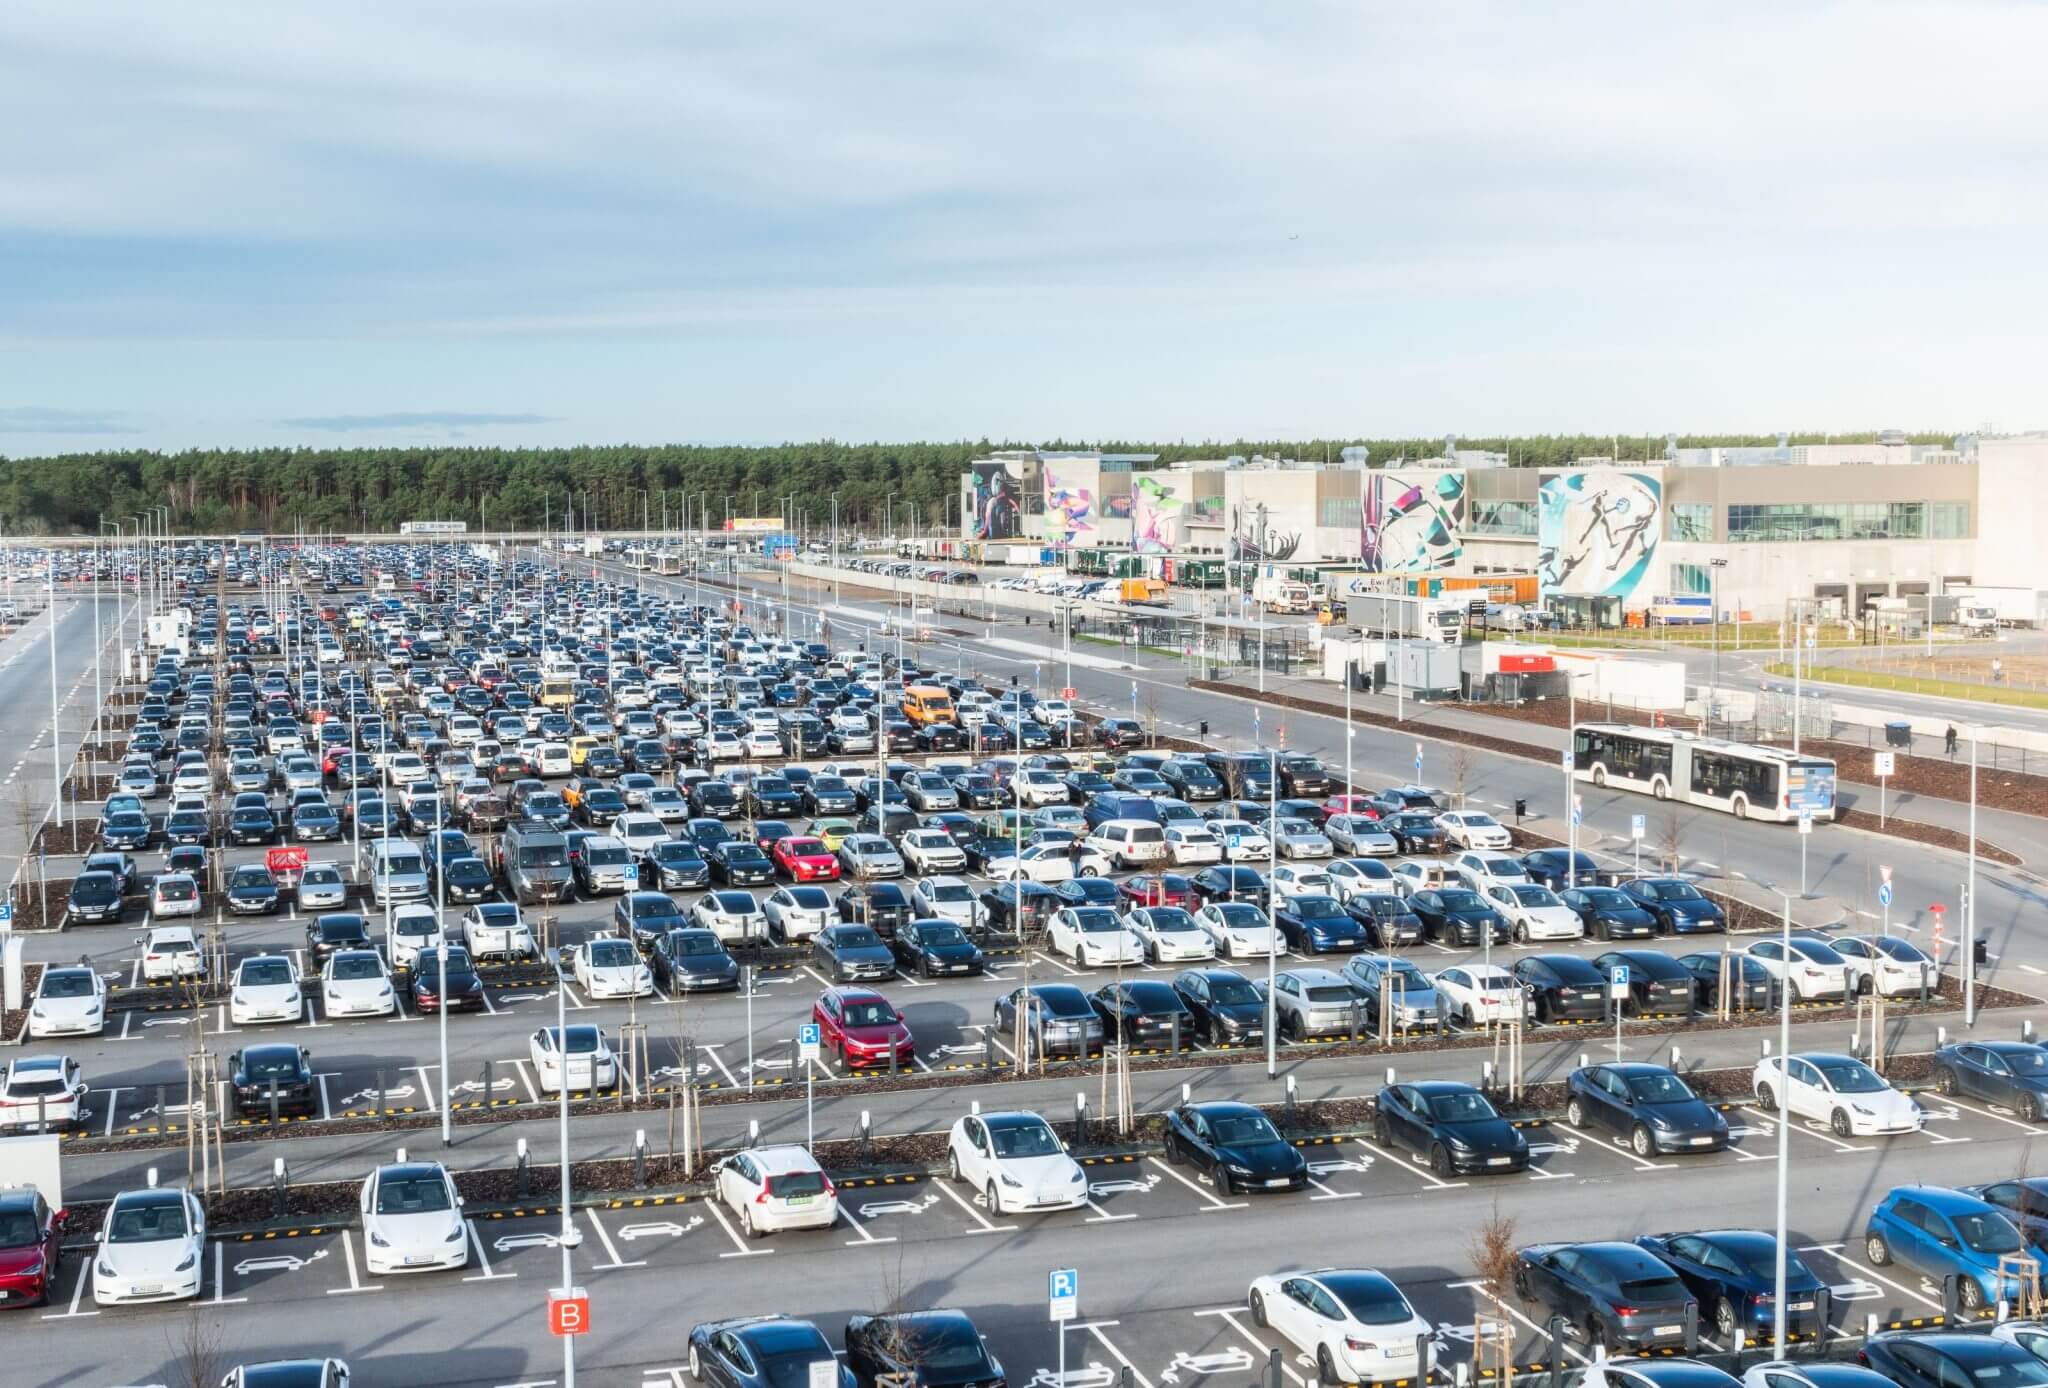 特斯拉在其柏林超级工厂停车场建造了 500 多个免费公共充电桩